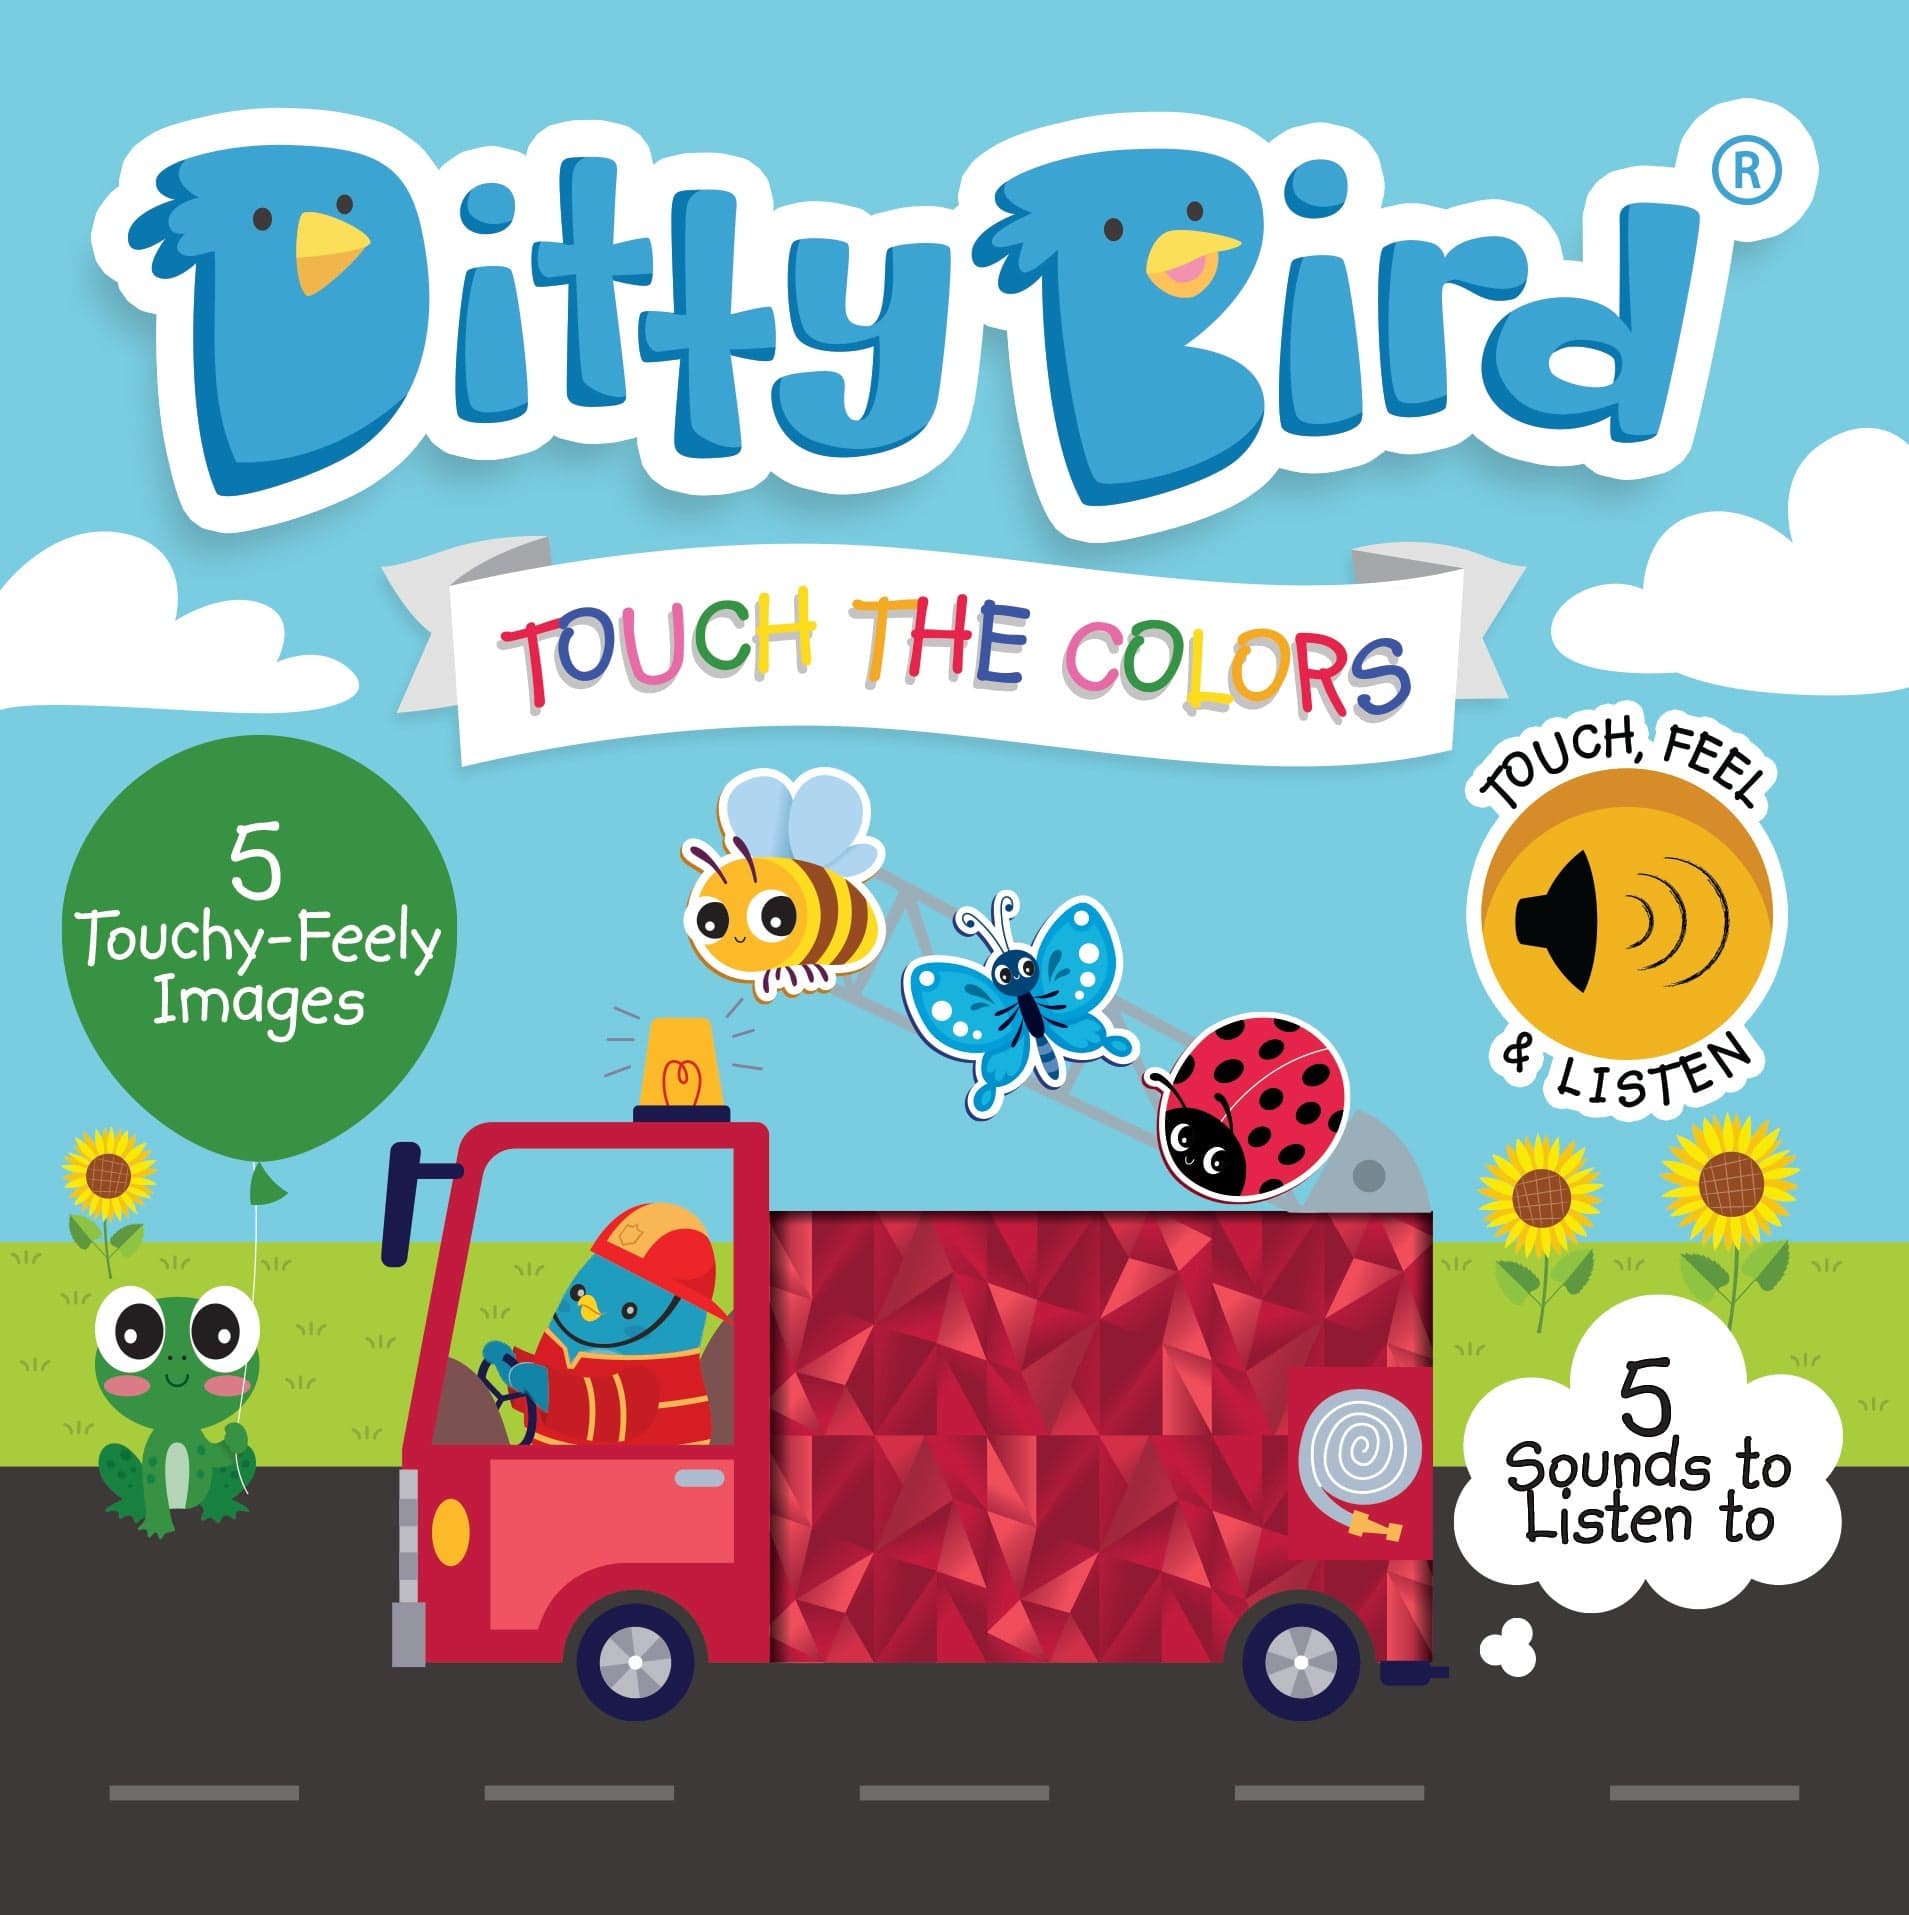 Ditty Bird Libros Libro Interactivo Musical Touch the Colors DI035